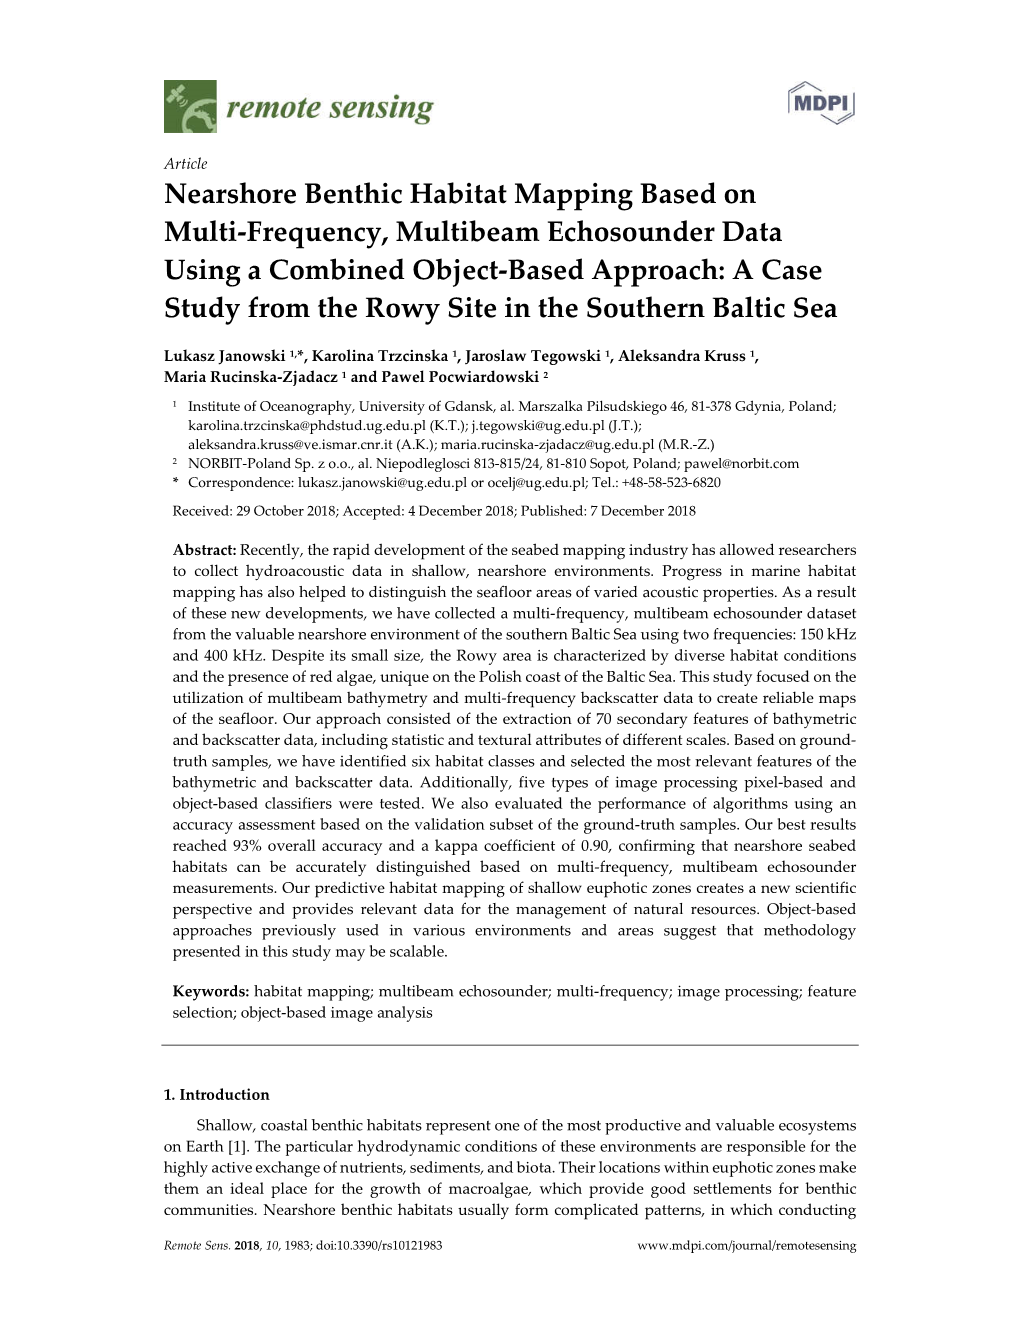 Nearshore Benthic Habitat Mapping Based On